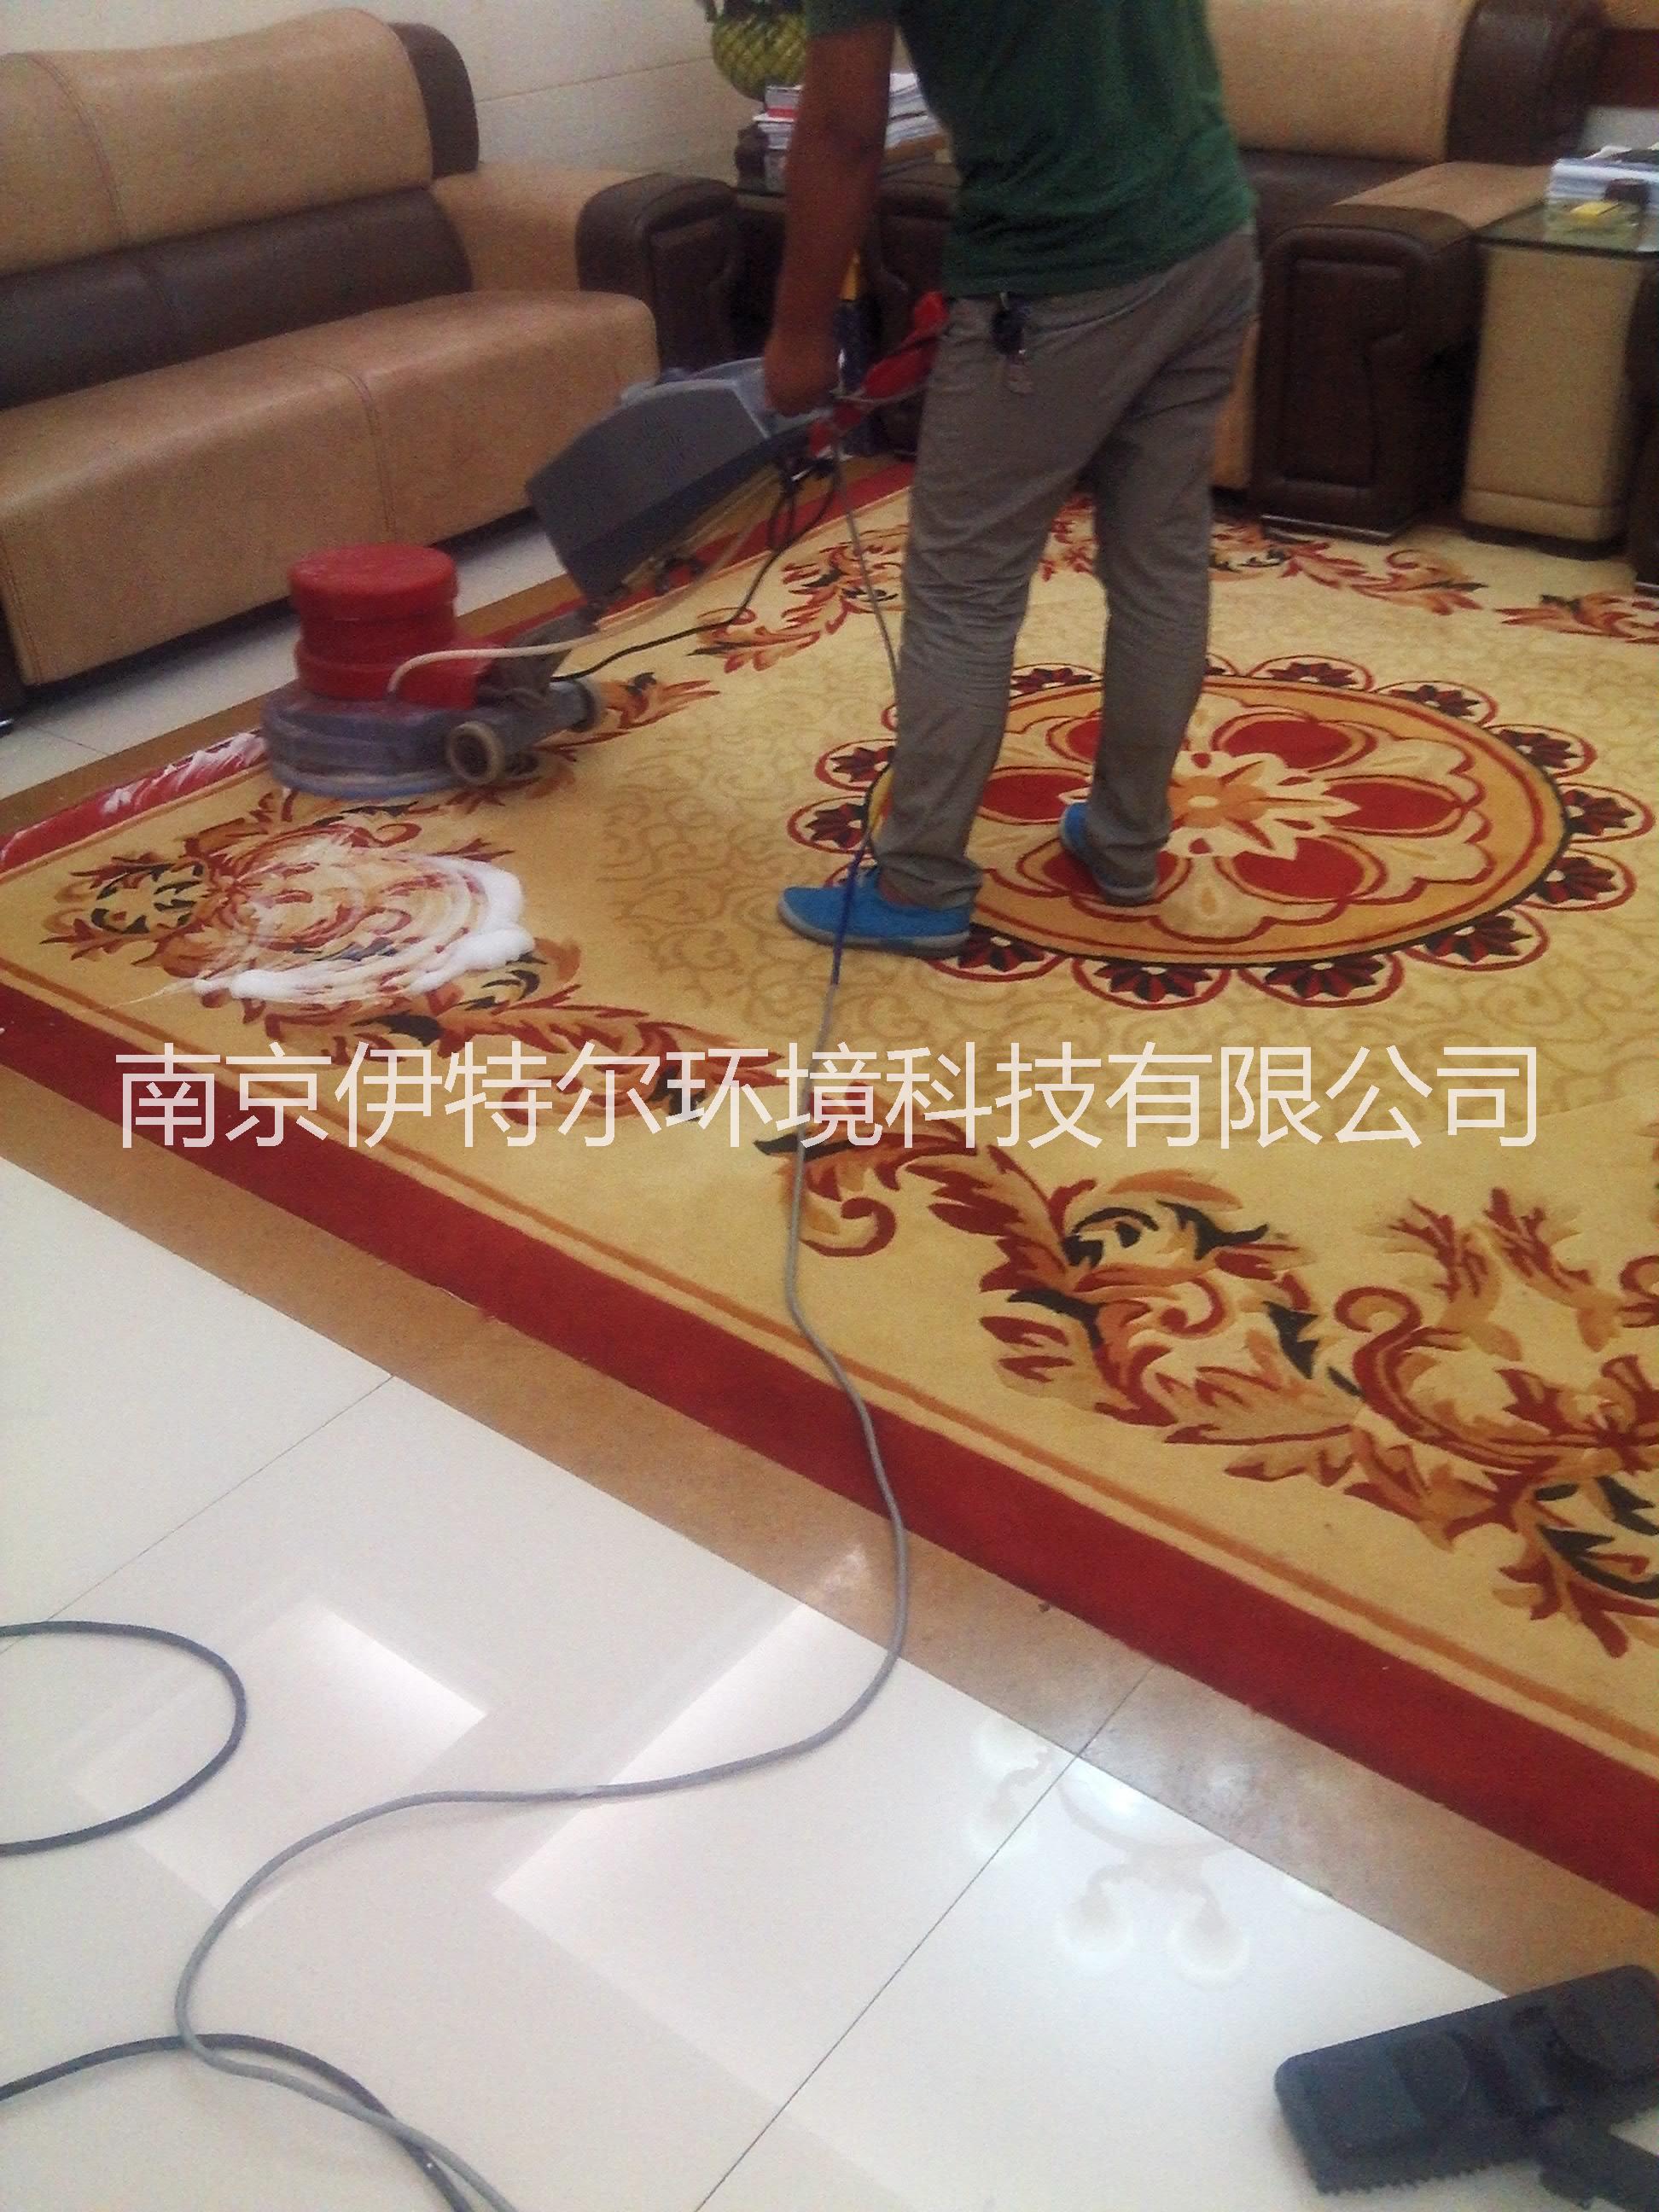 供应南京清洗地毯公司地毯清洁保养公司图片